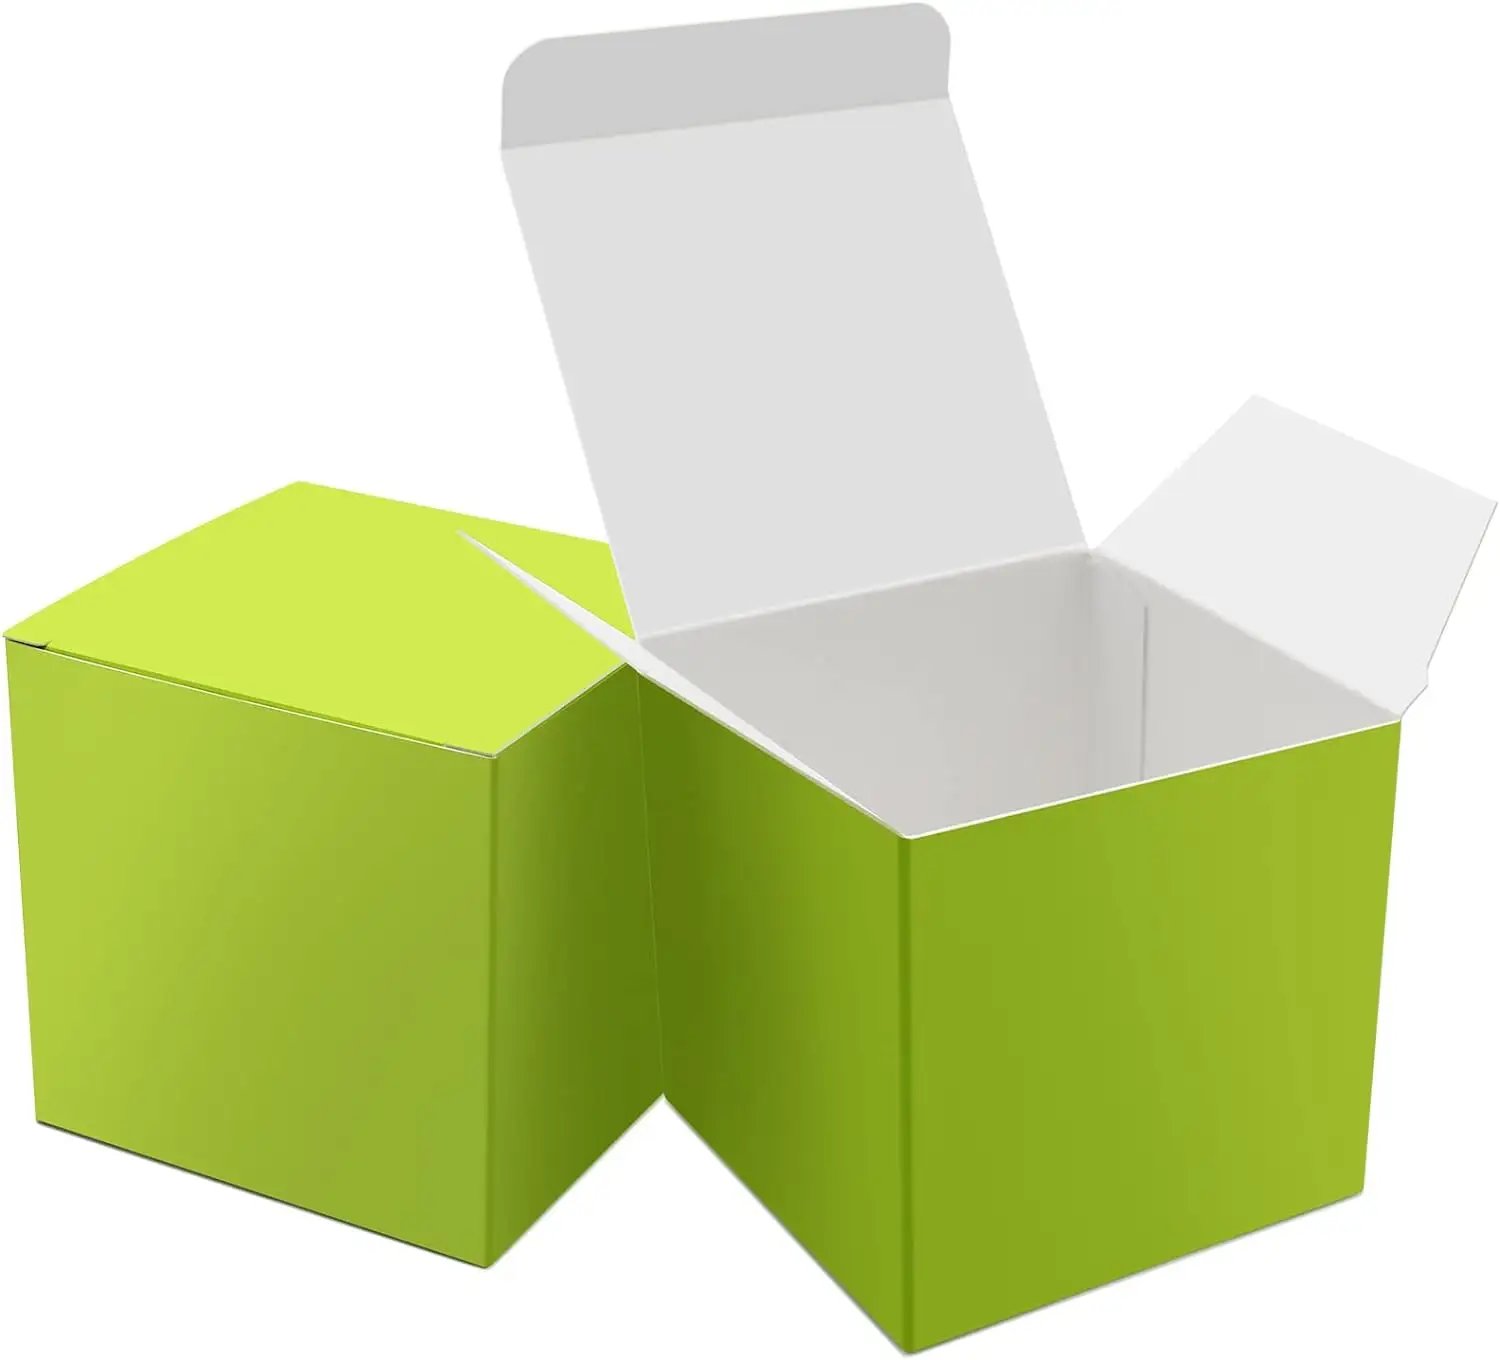 कस्टम हरे कागज उपहार छोटे कैंडी बक्से थोक 3x3x3x3 इंच के उपहार बॉक्स के साथ लिड्स गुडी इलाज बॉक्स